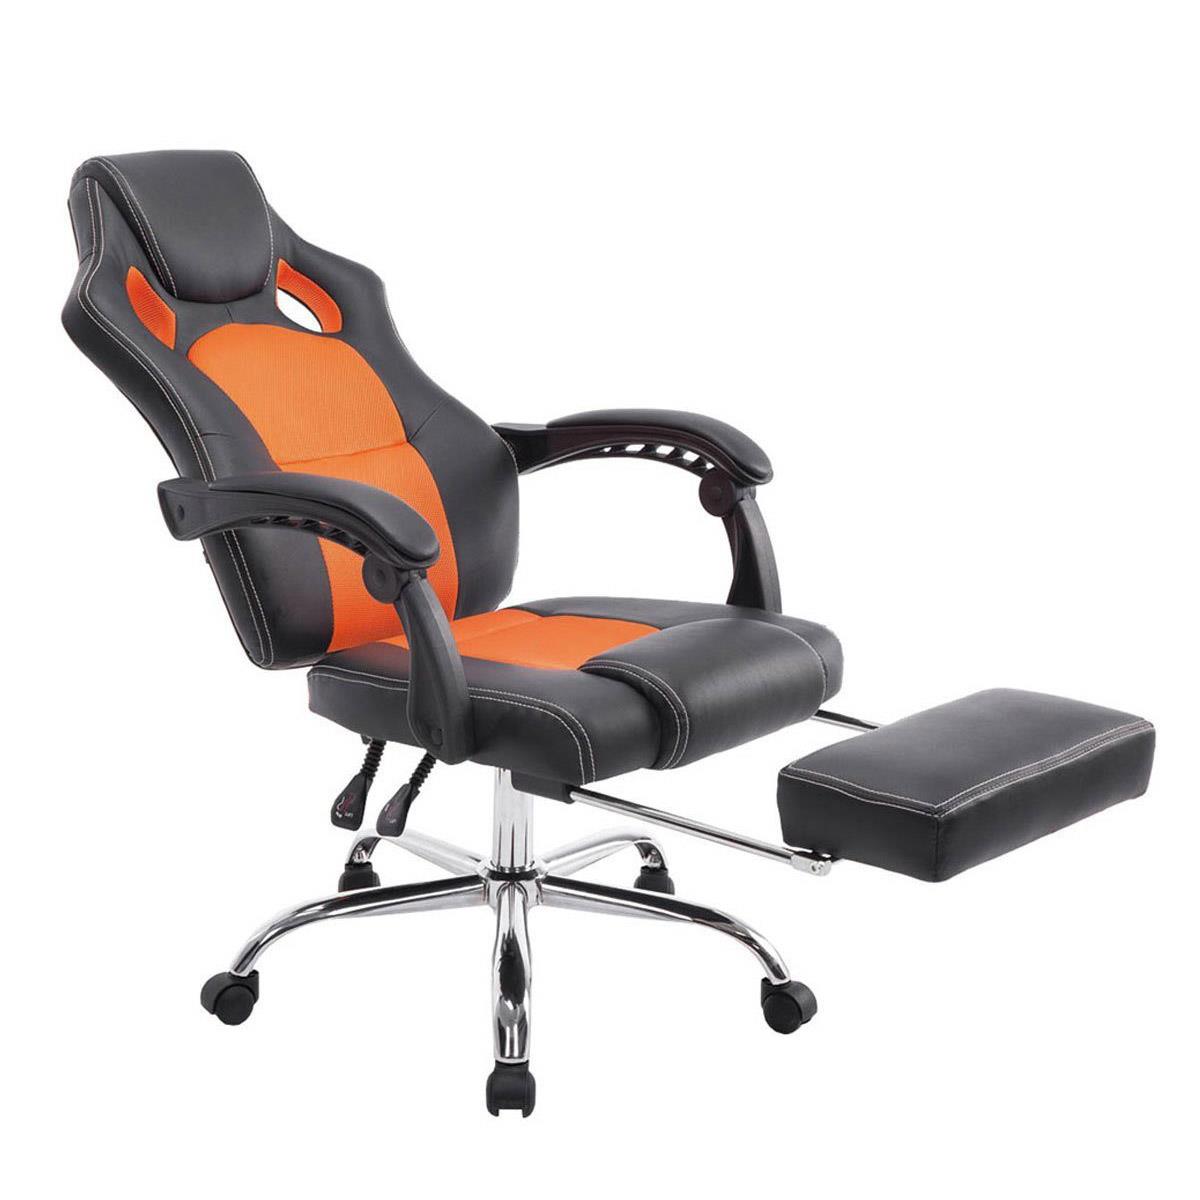 Chaise Gamer SPRINT, avec Repose-pieds Extensible, en Cuir noir et Maille Respirable, Orange